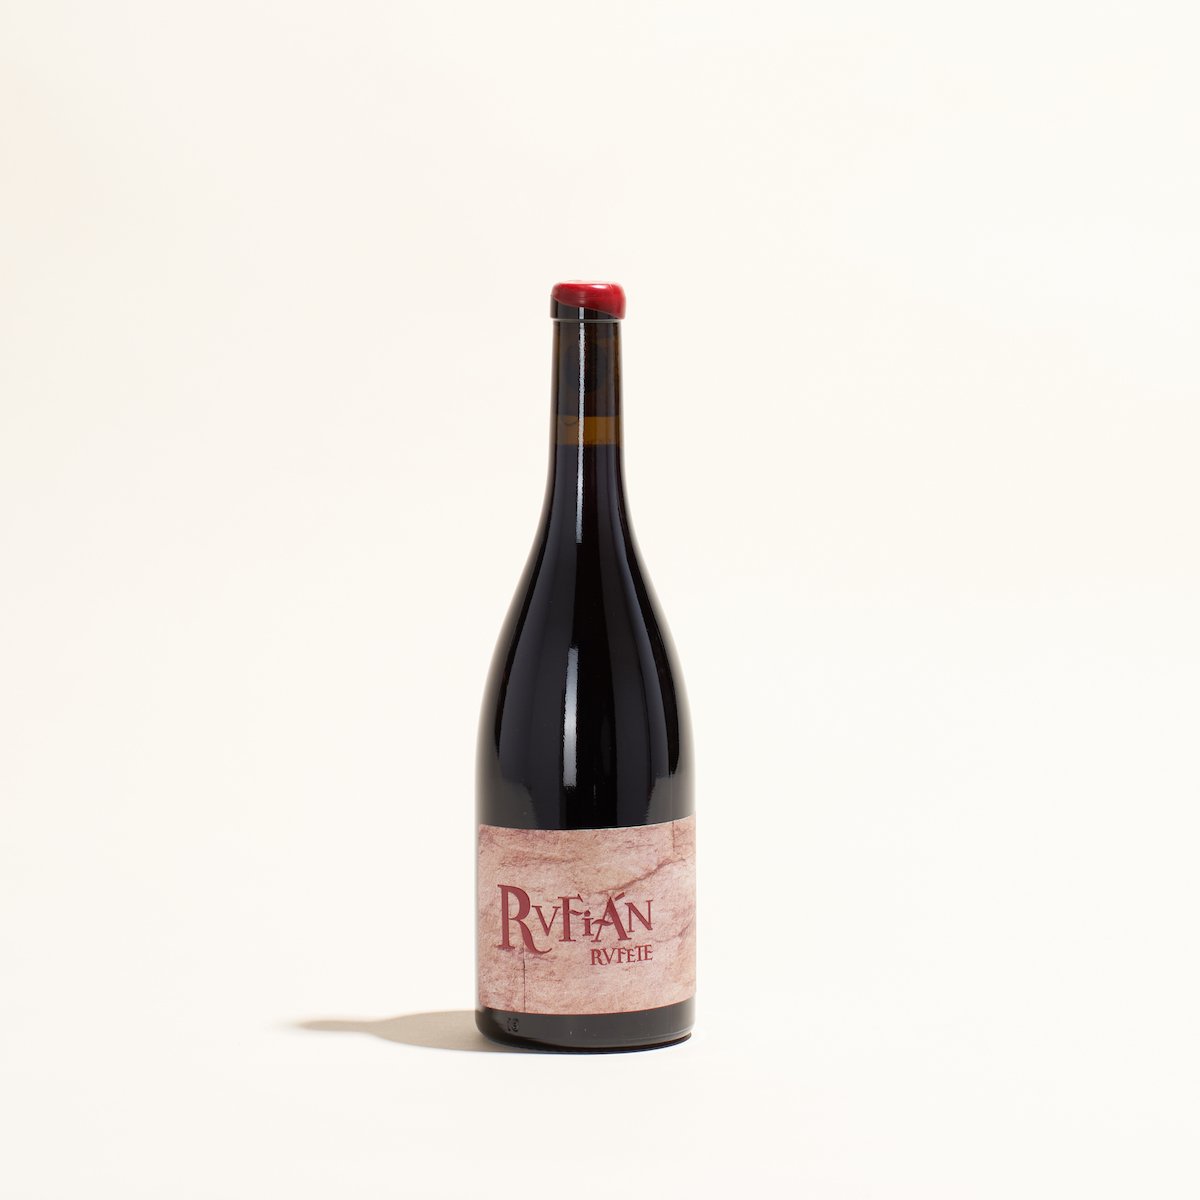 rvfian rvfete microbio natural red wine castilla y leon spain front